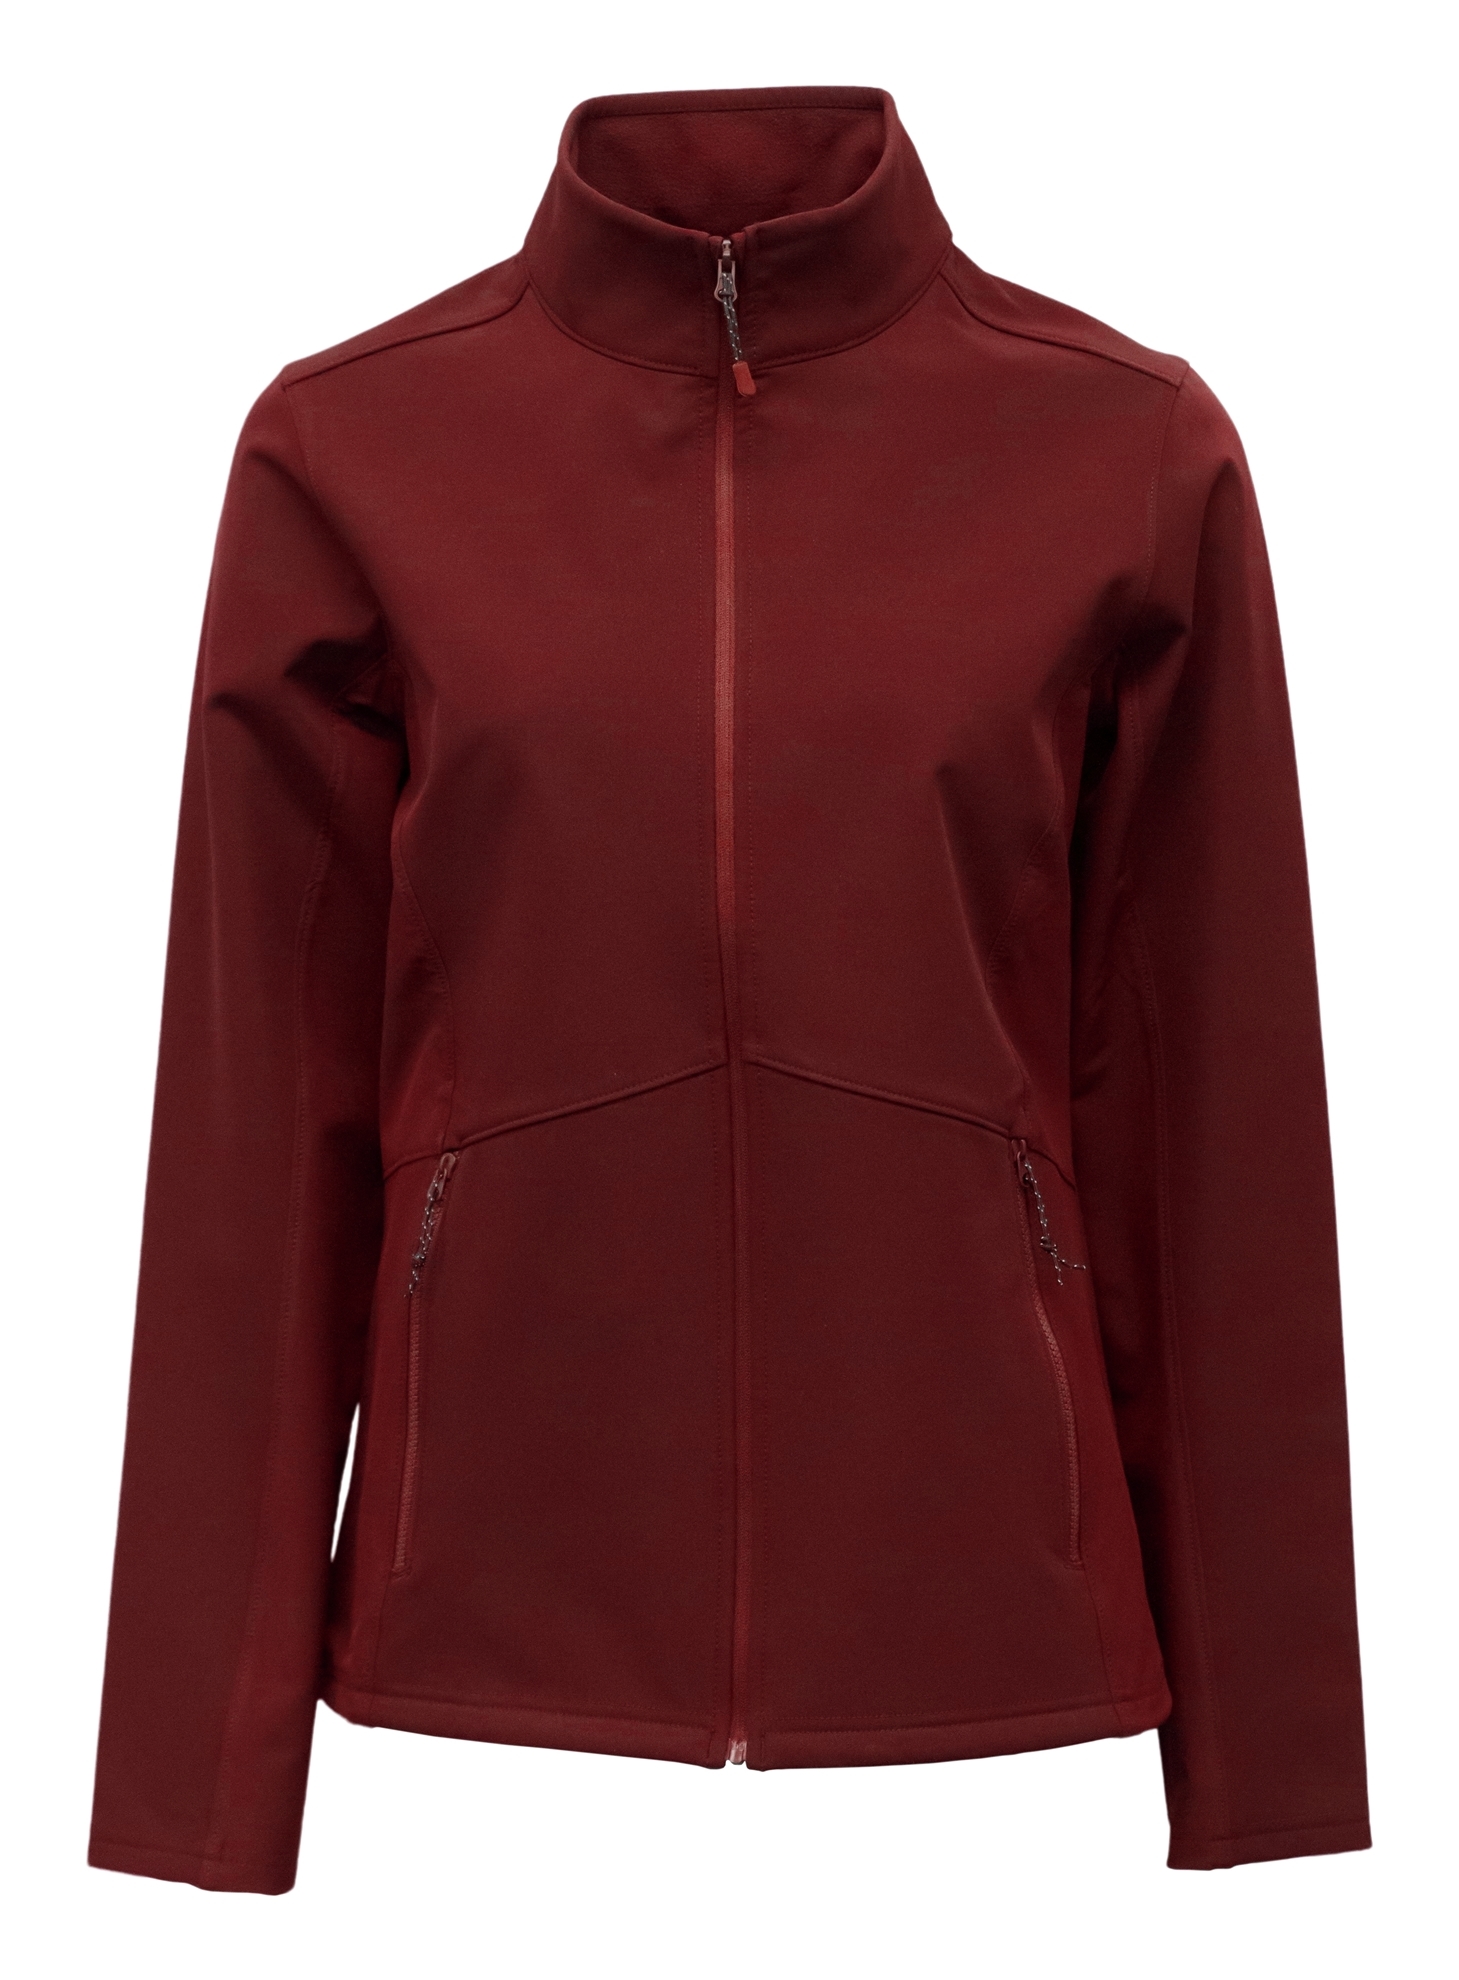 BAW Athletic Wear ST21 - Women's Softshell Jacket $27.60 - Outerwear